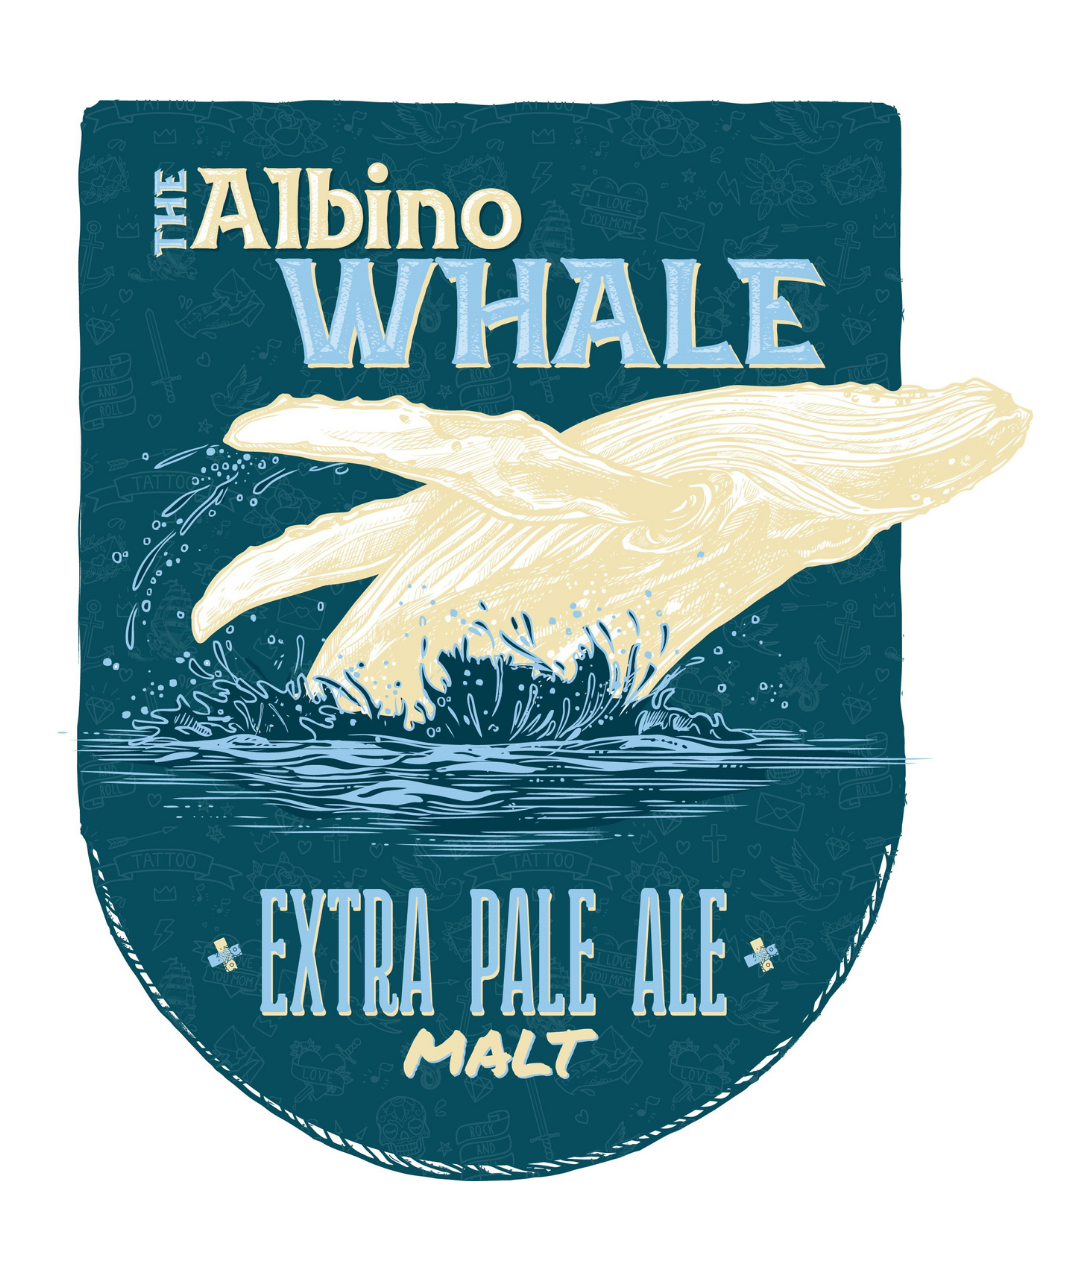 Albino Pale Whale - Extra Pale Ale Malt